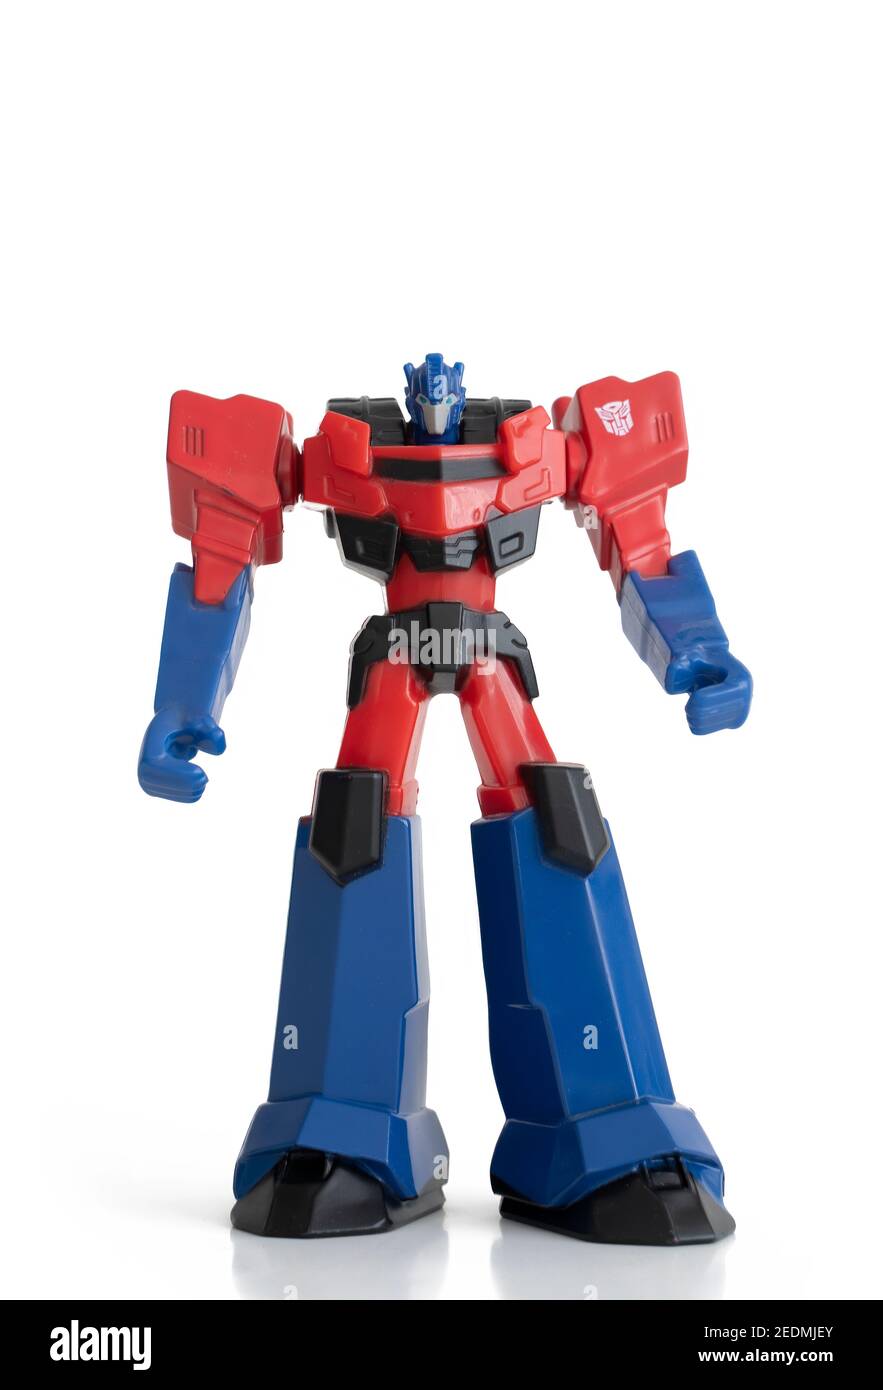 Optimus Prime Sammlerfigur aus Transformers Franchise, einem amerikanischen und japanischen Medien-Franchise von Hasbro und Takara Tomy produziert. Stockfoto